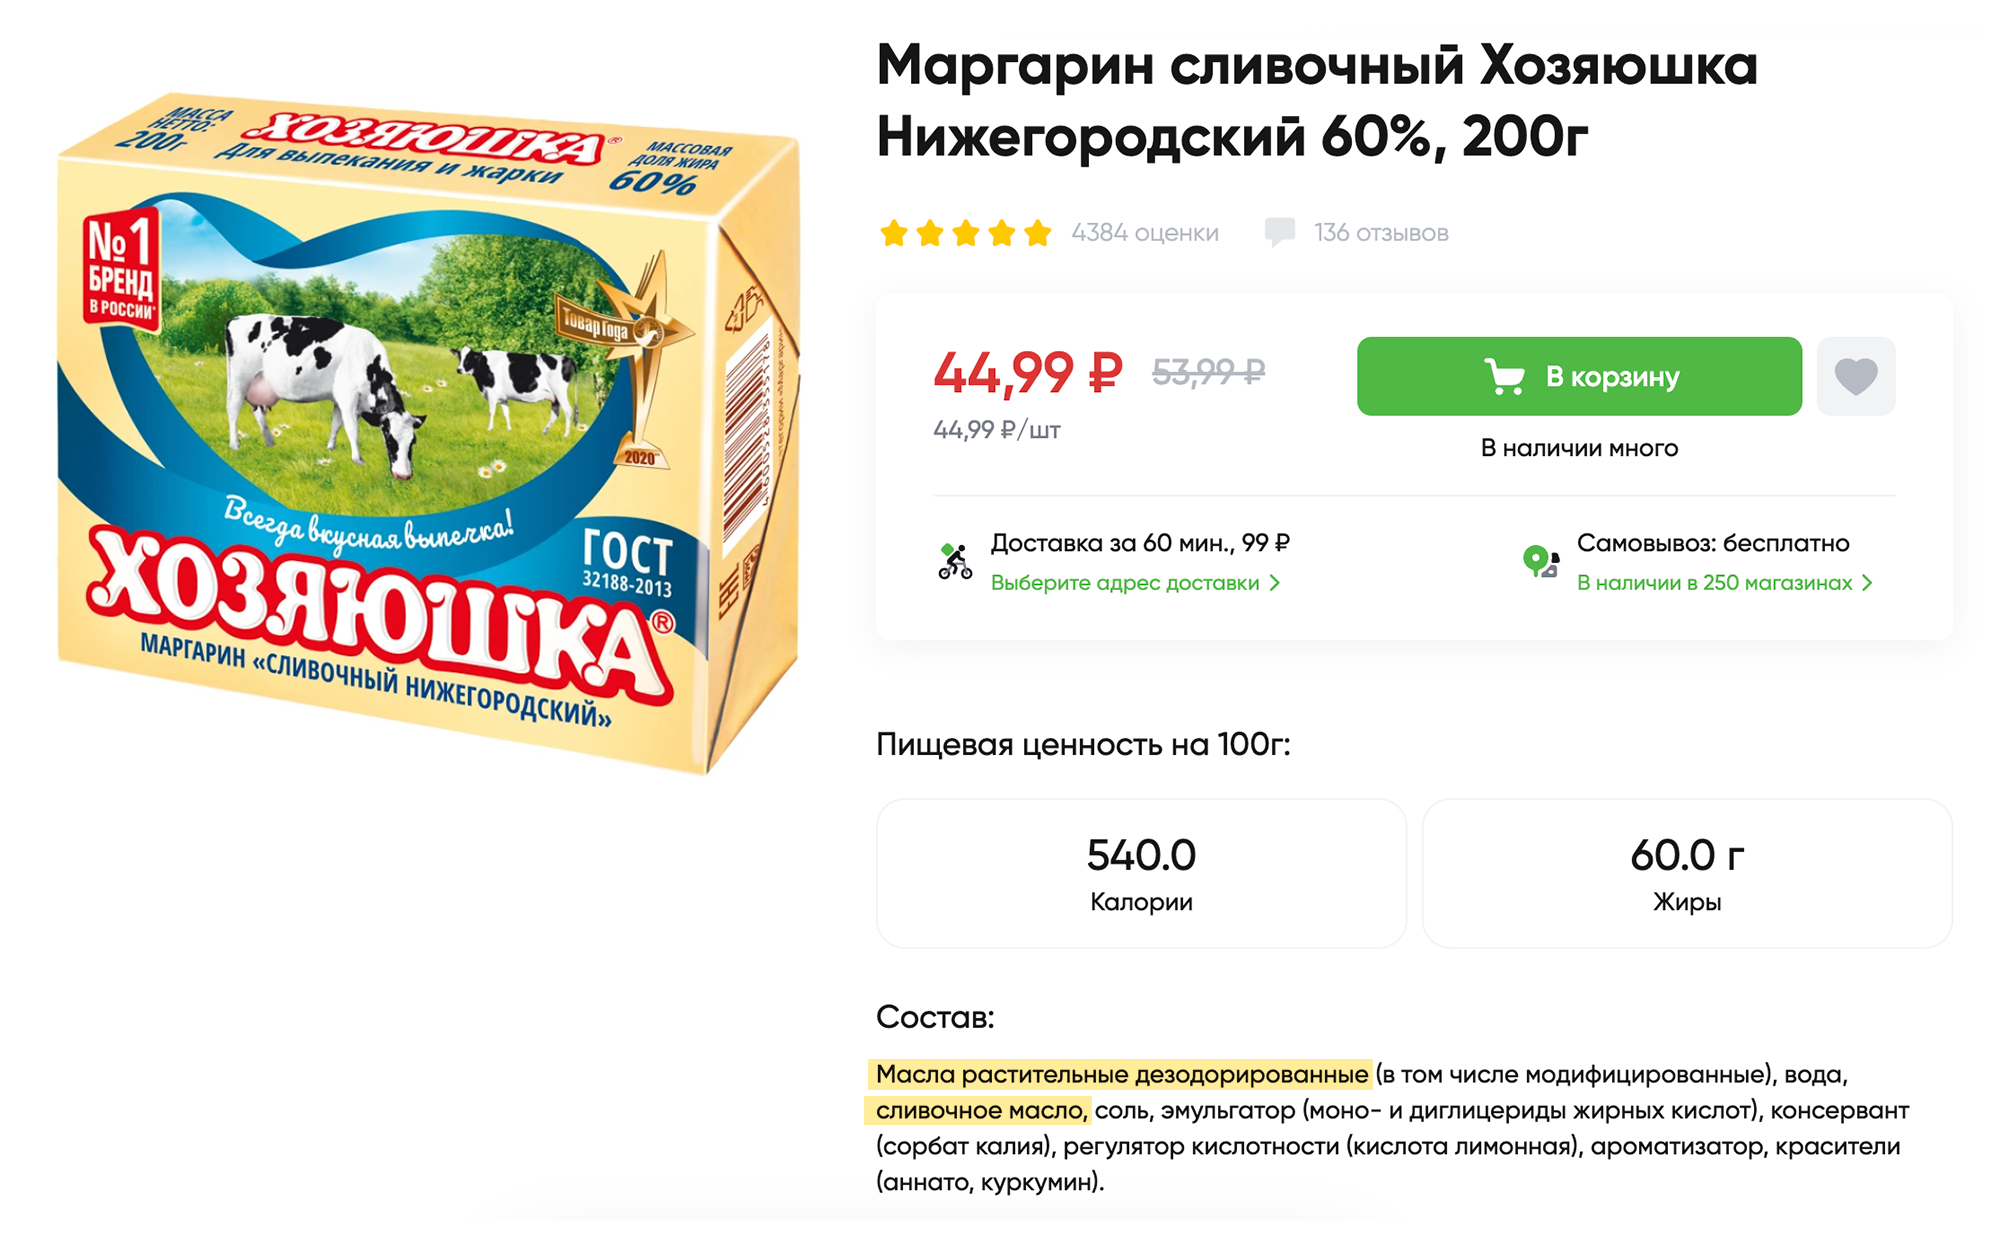 Один из популярных домашних маргаринов с добавлением сливочного масла, изготовленных по госту «Маргарины». Источник: perekrestok.ru